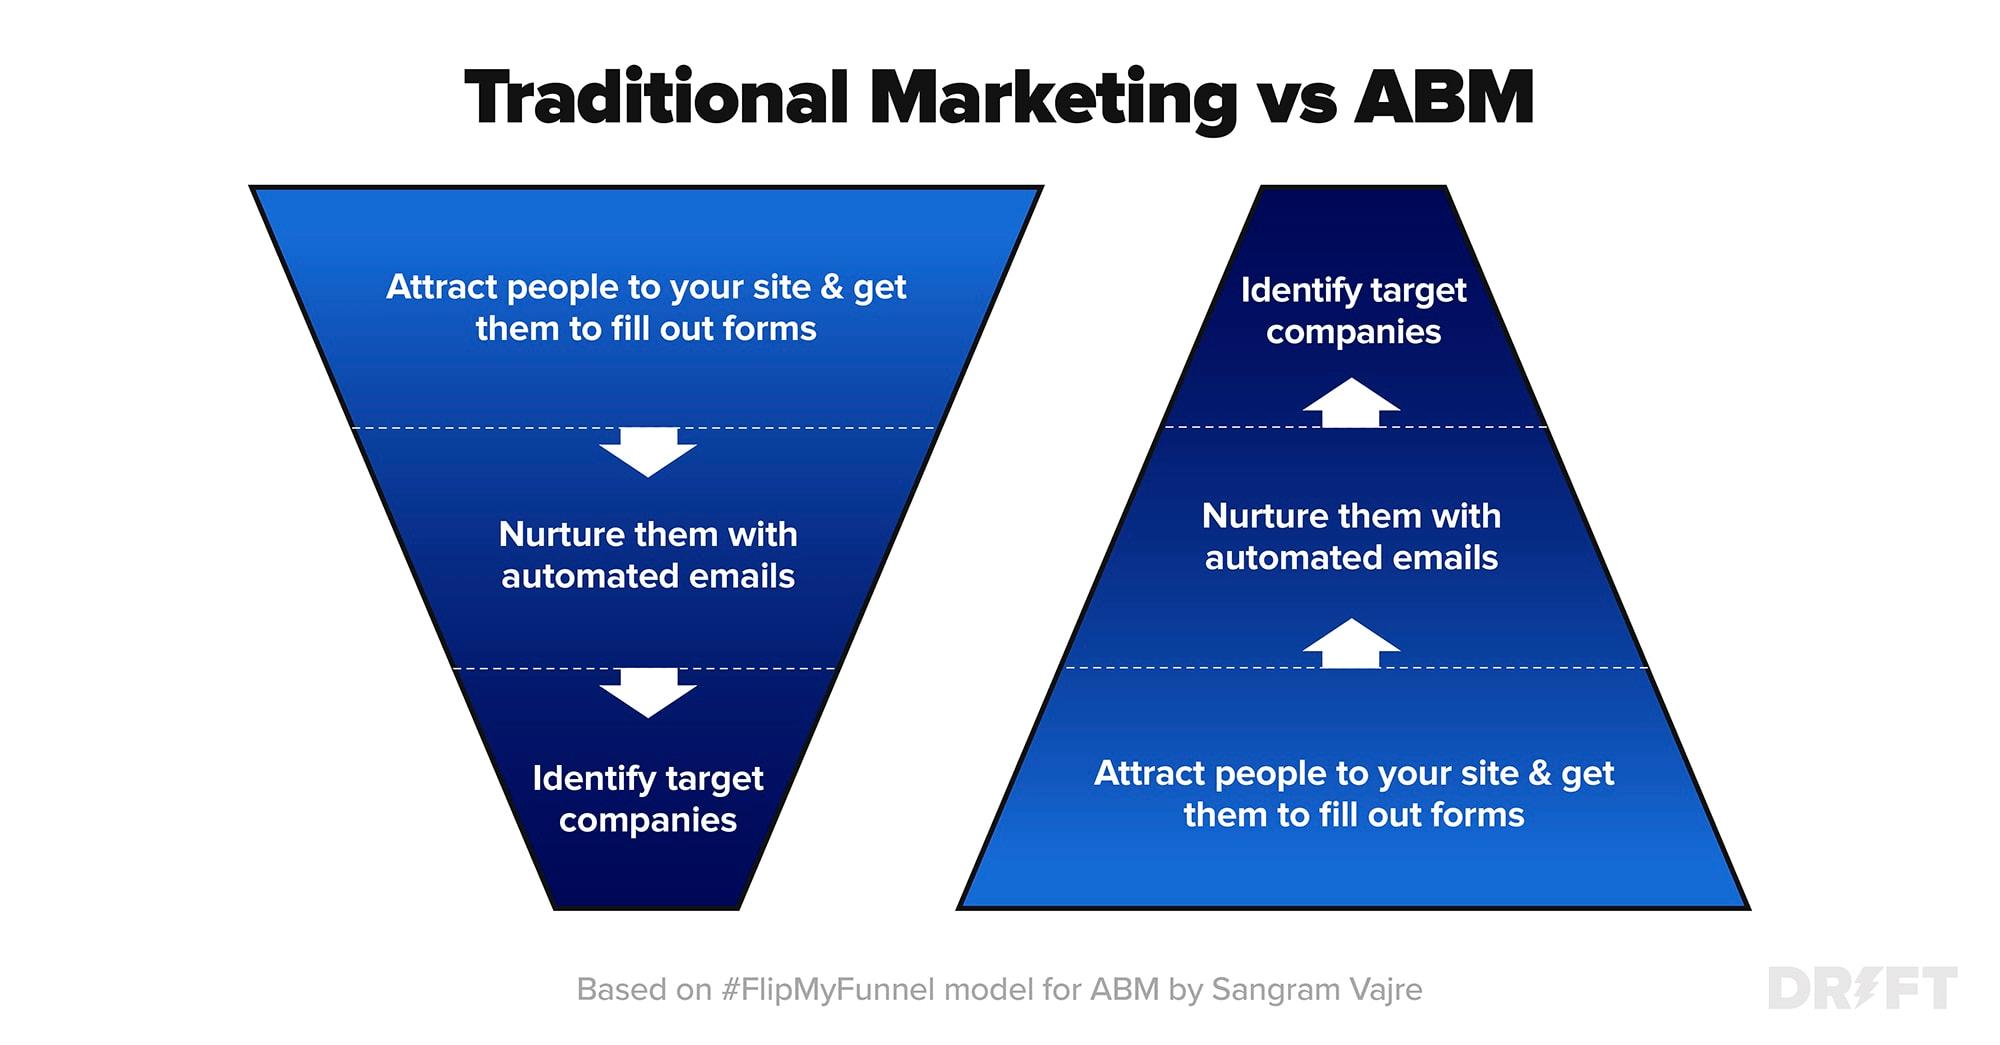 Traditional Marketing vs. ABM